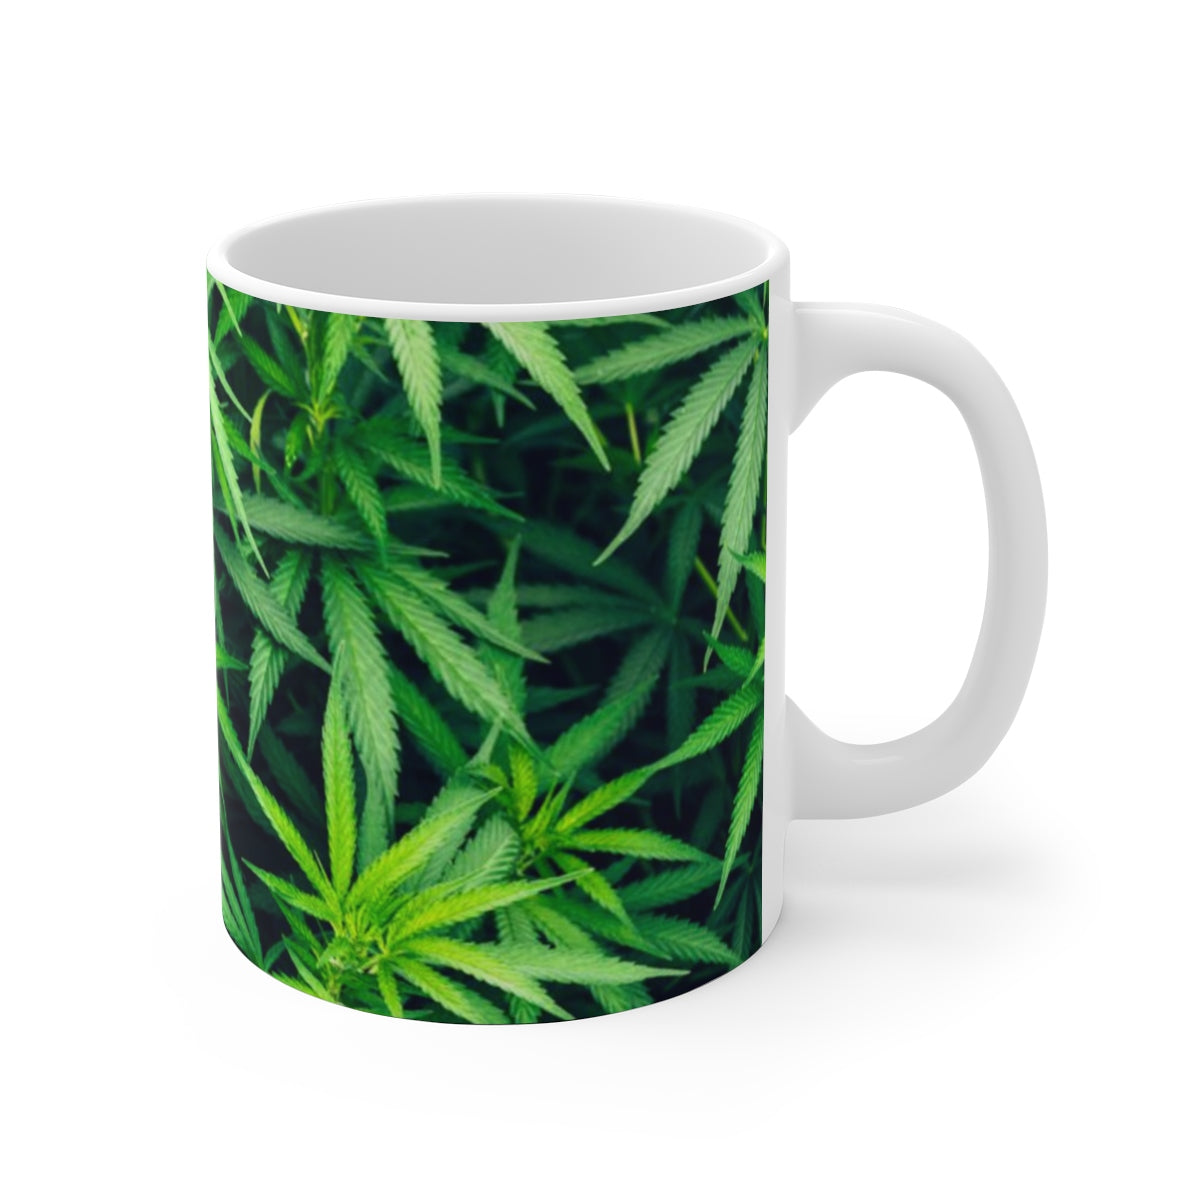 My Cannabis White Ceramic Mug